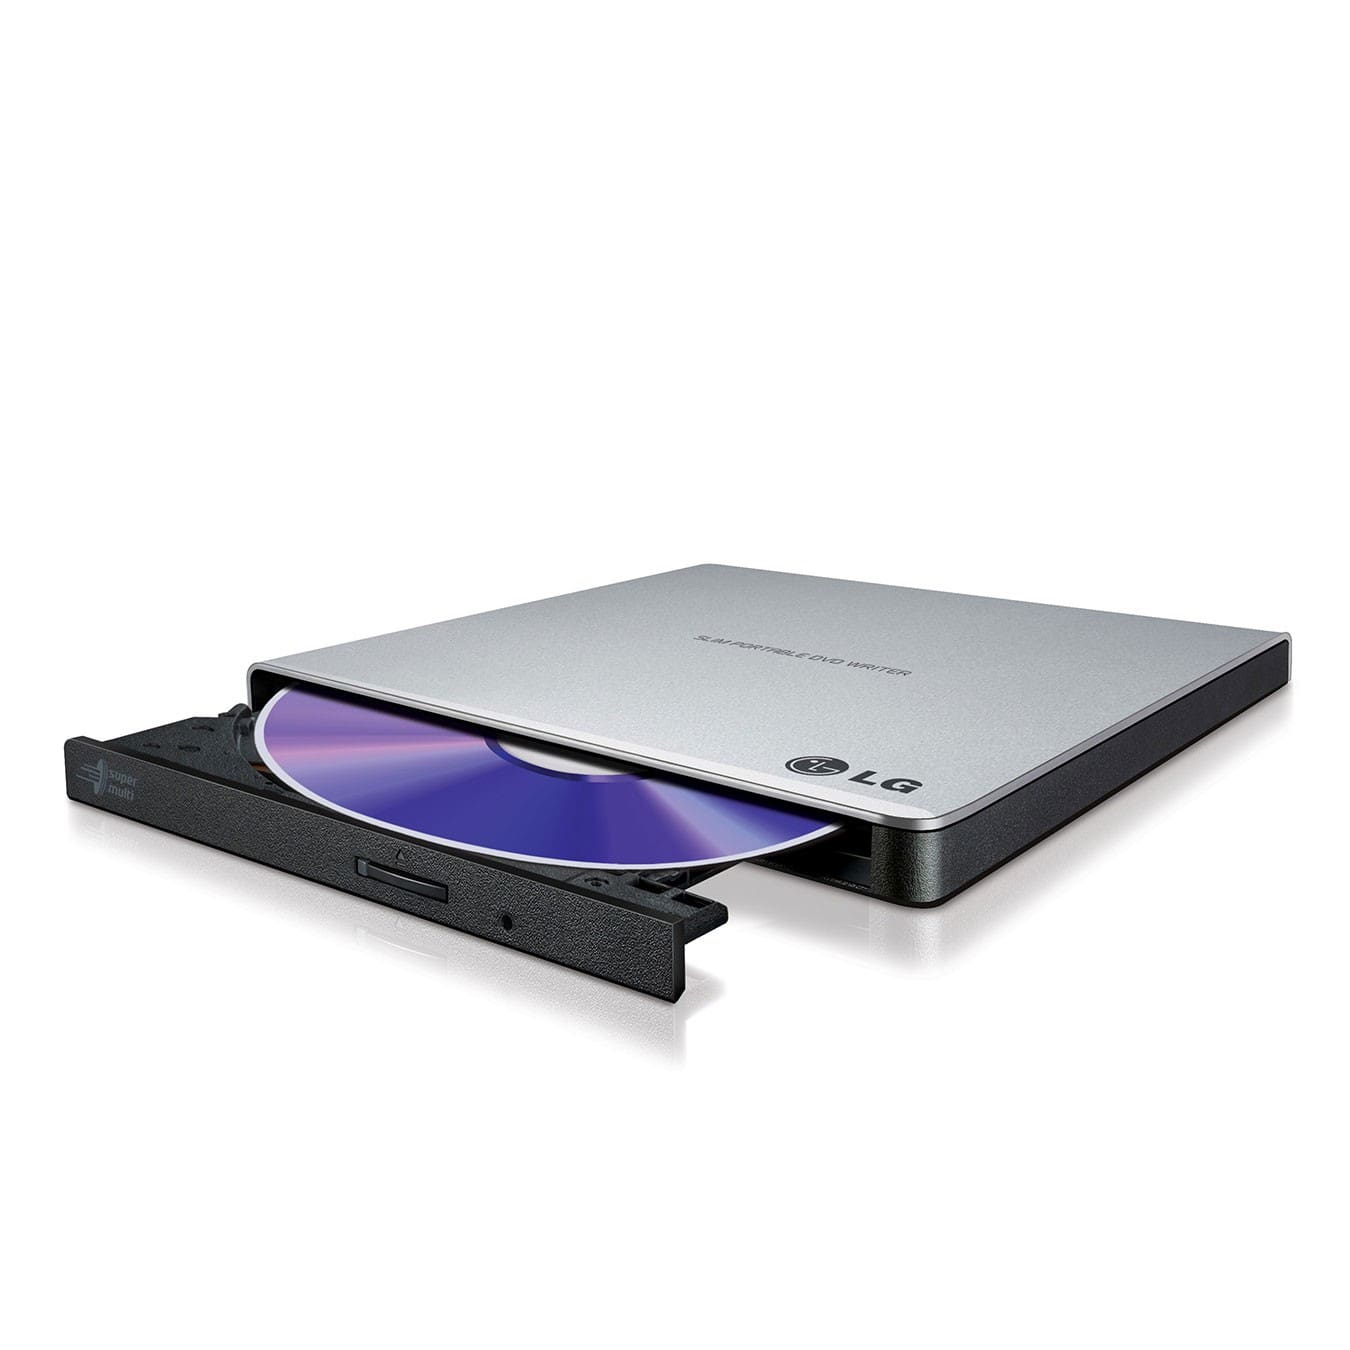 Vente Graveur DVD externe LG Slim USB à bas prix | Electro Tounes